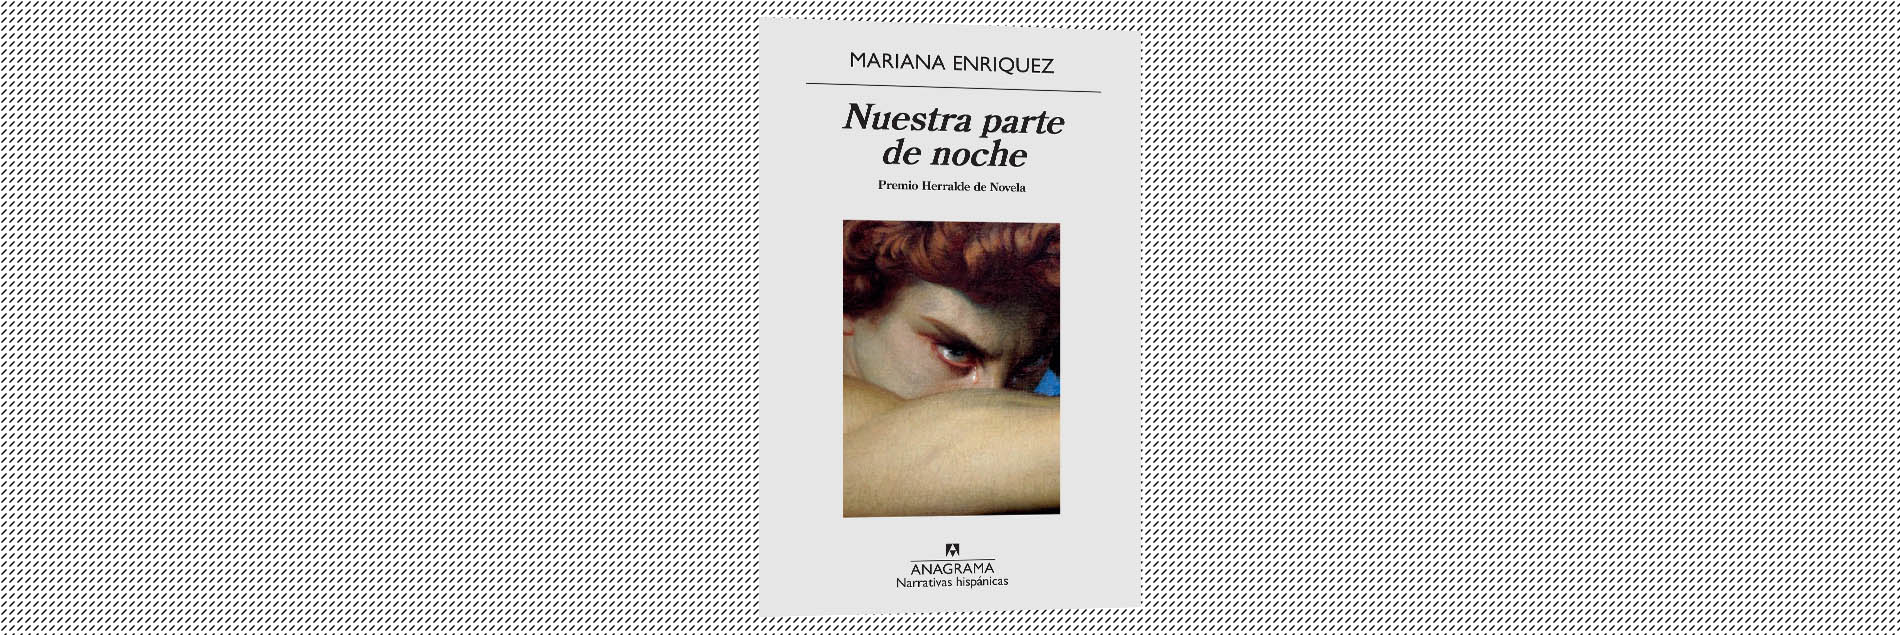 Monstruos y sectas secretas: las cosas de Mariana Enríquez — La Jornada -  Semanal